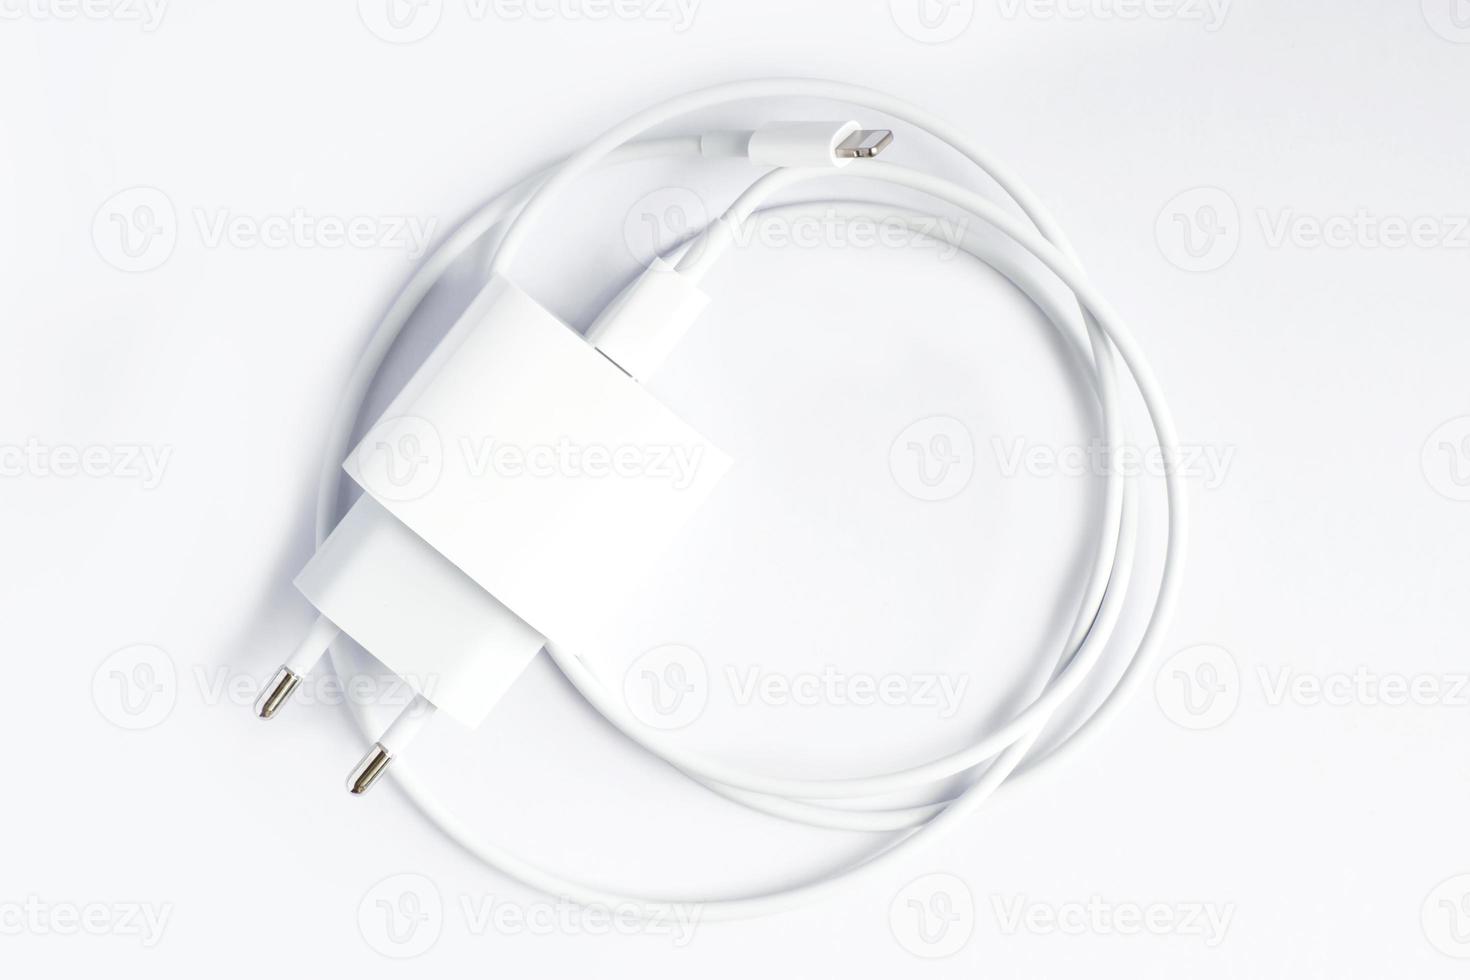 vista superior do carregador ac preto do telefone e do cabo USB no fundo branco foto